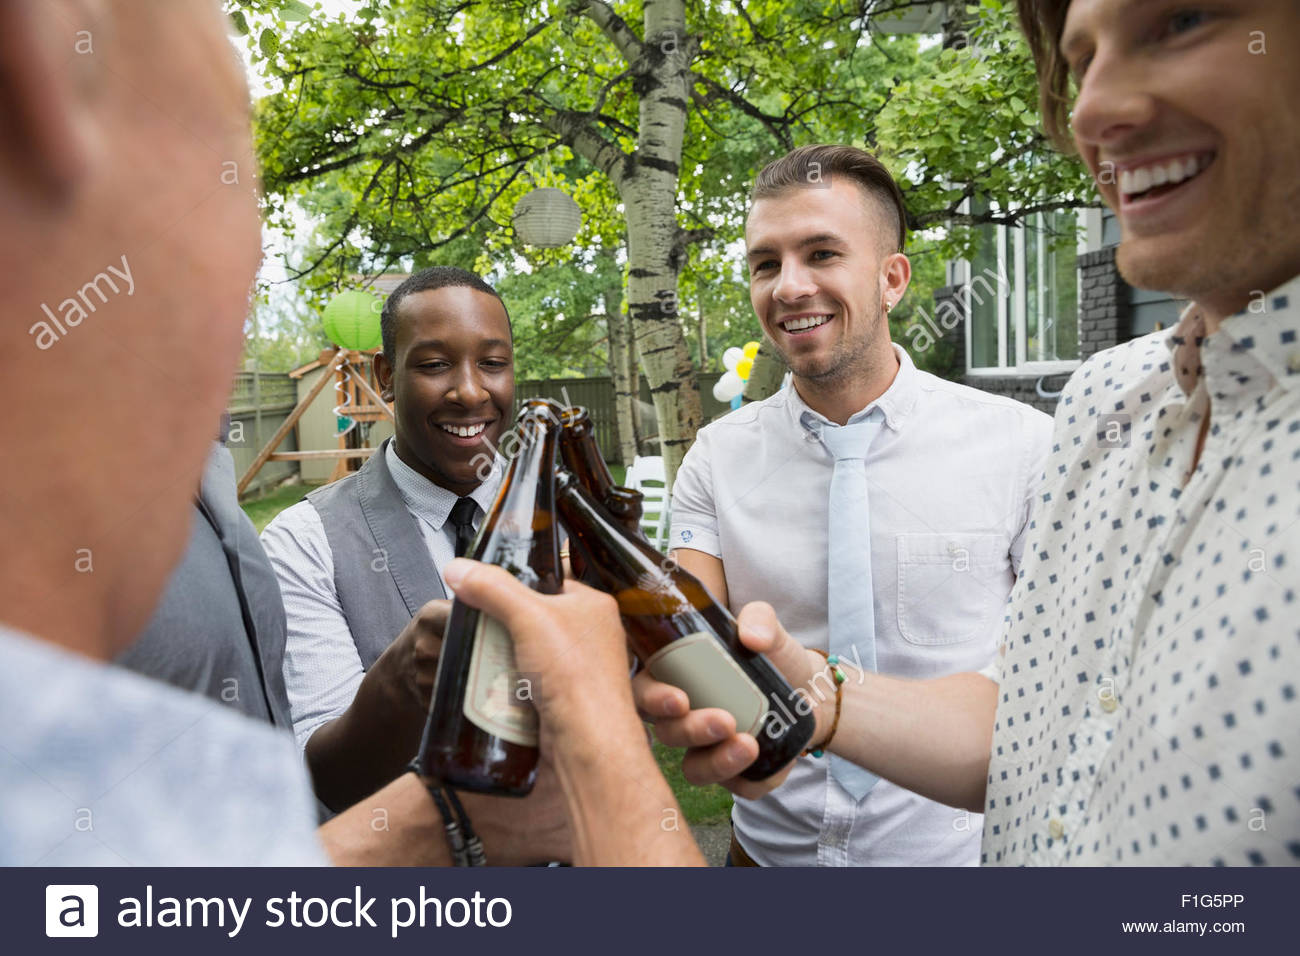 Los hombres de tostar los vasos de cerveza en el garden party Foto de stock